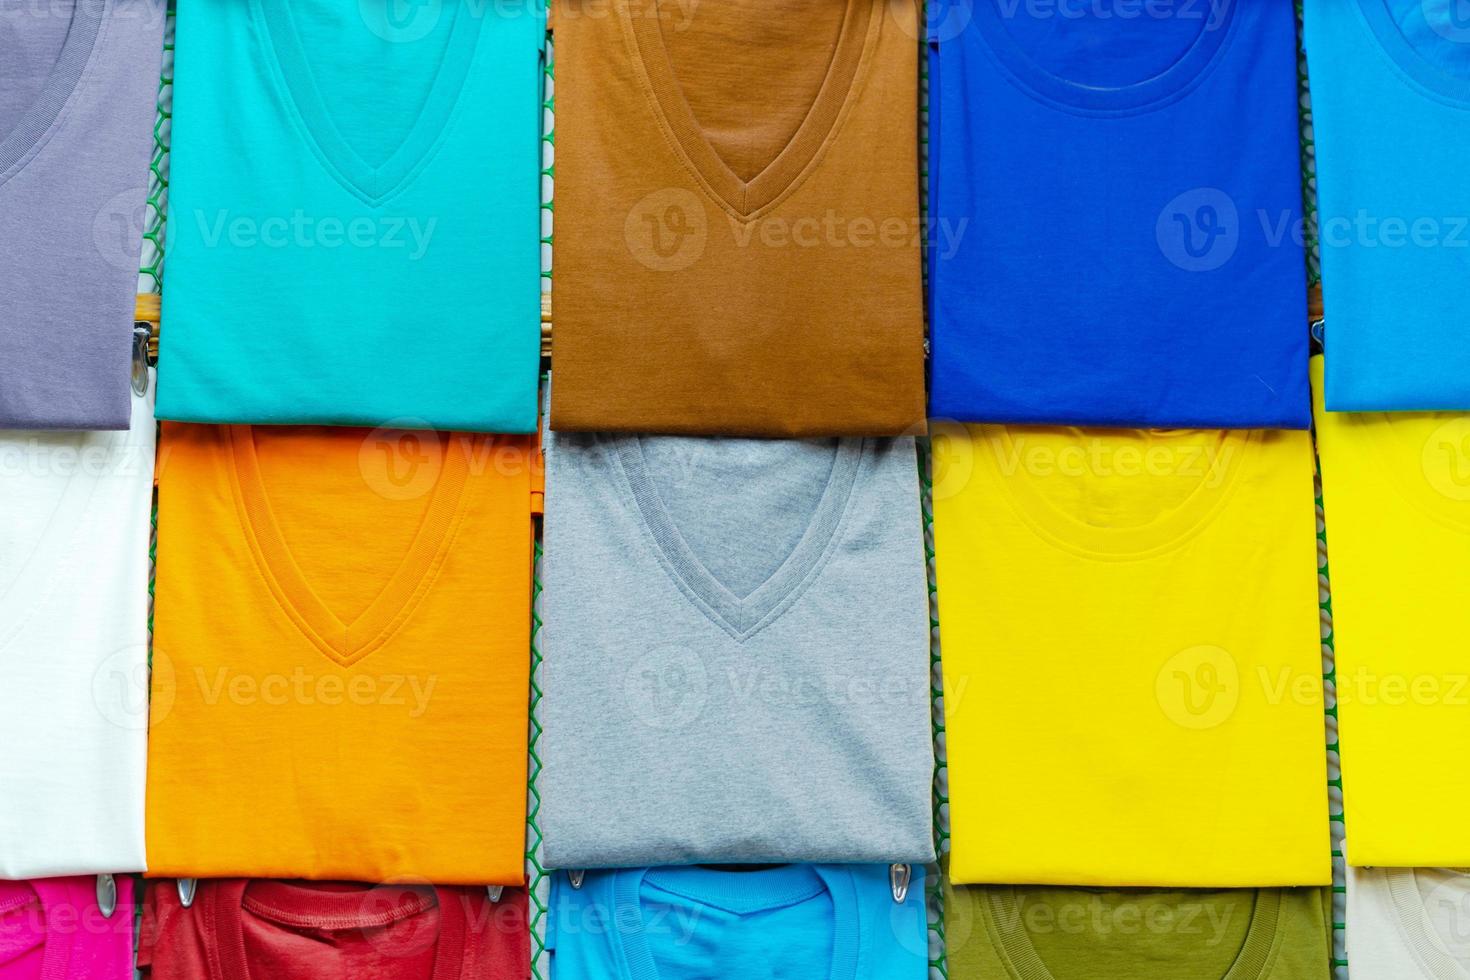 close-up van kleurrijke t-shirts op hangers foto